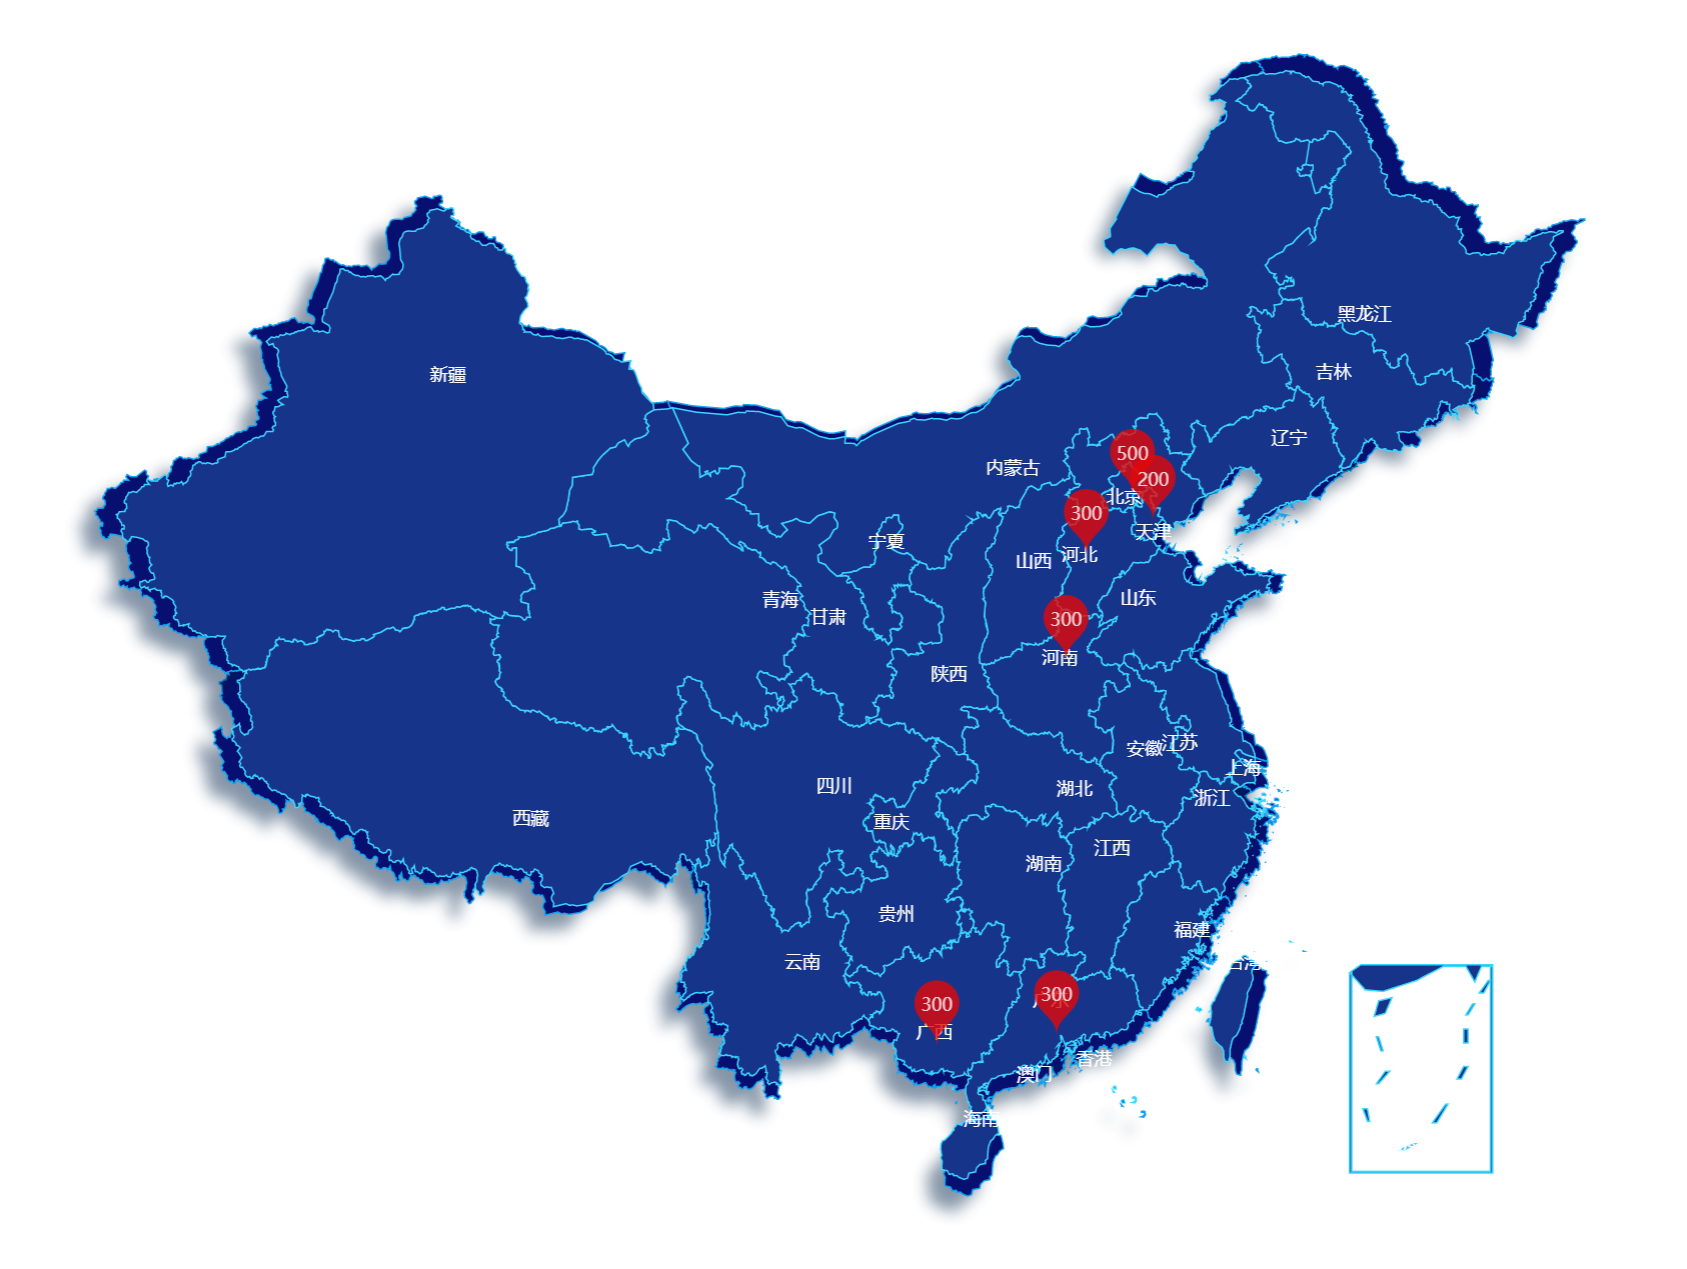 Vue3 + Echarts(5.x) 实现中国地图